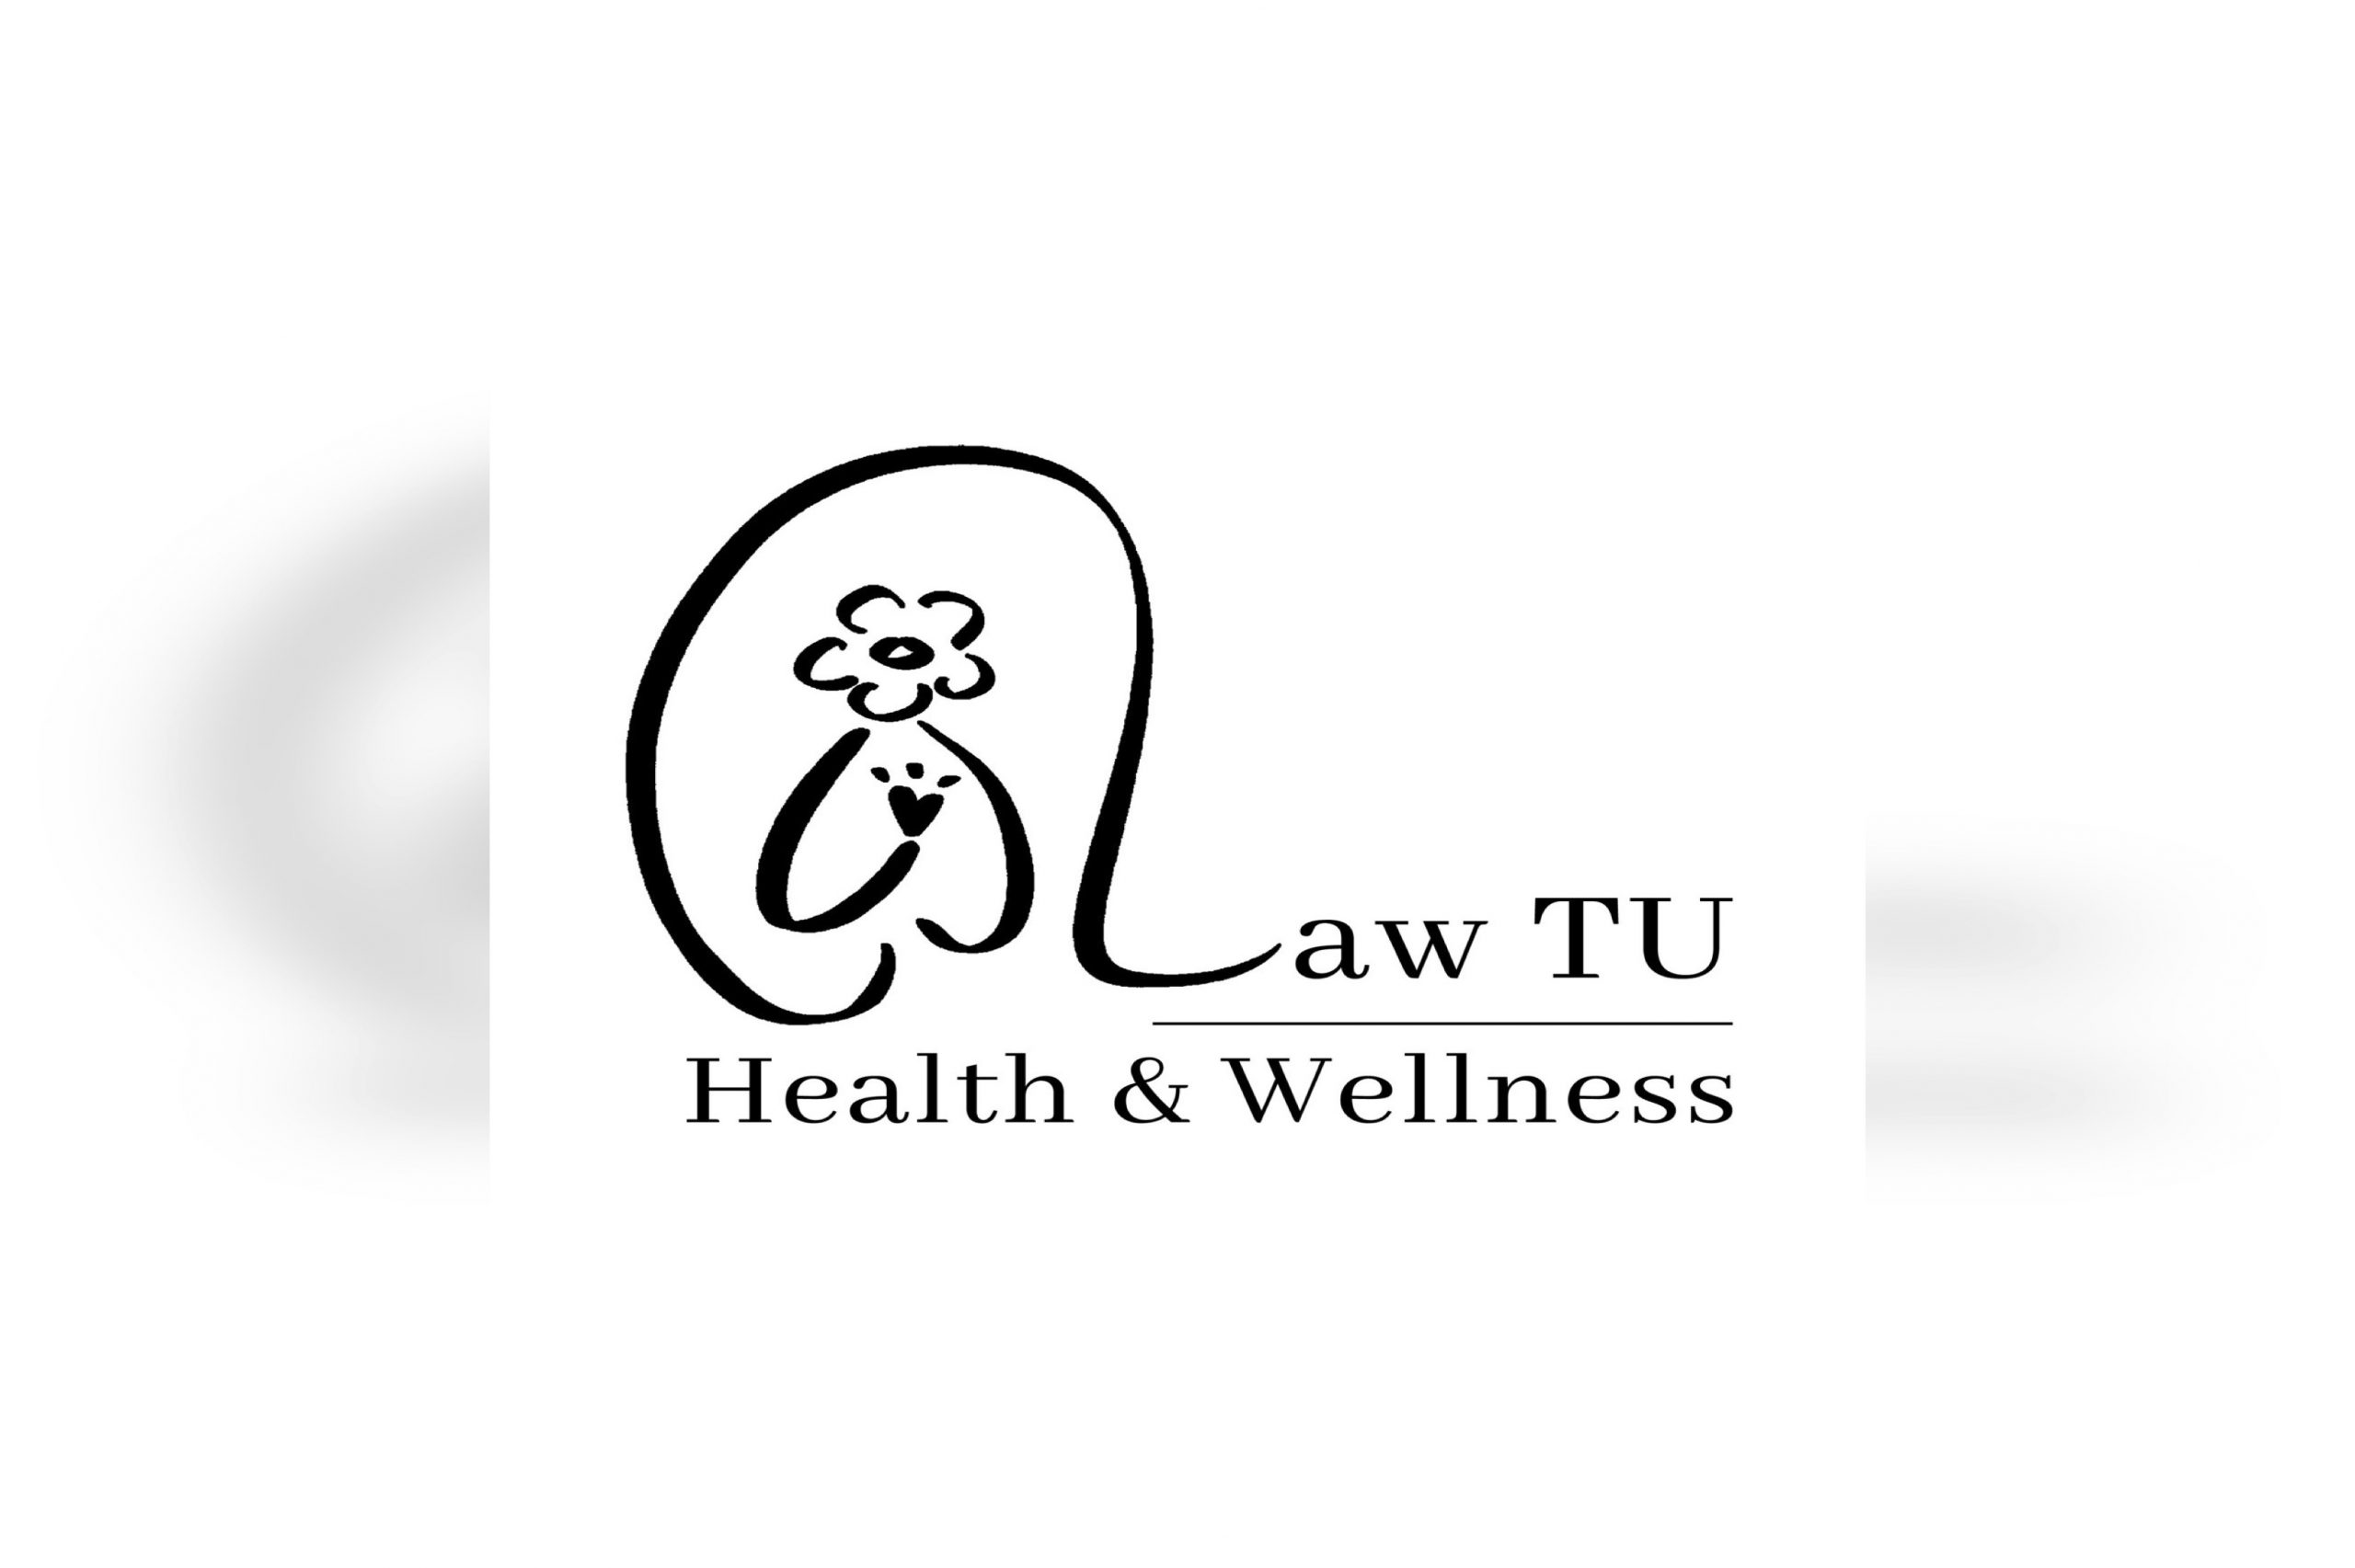 [คุยกับนักศึกษากฎหมาย] คุยกับวรัญญา พยันตา นักศึกษาคณะนิติศาสตร์ที่ชนะการแข่งขันการออกแบบตราสัญลักษณ์โครงการ LAW TU Health & Wellness